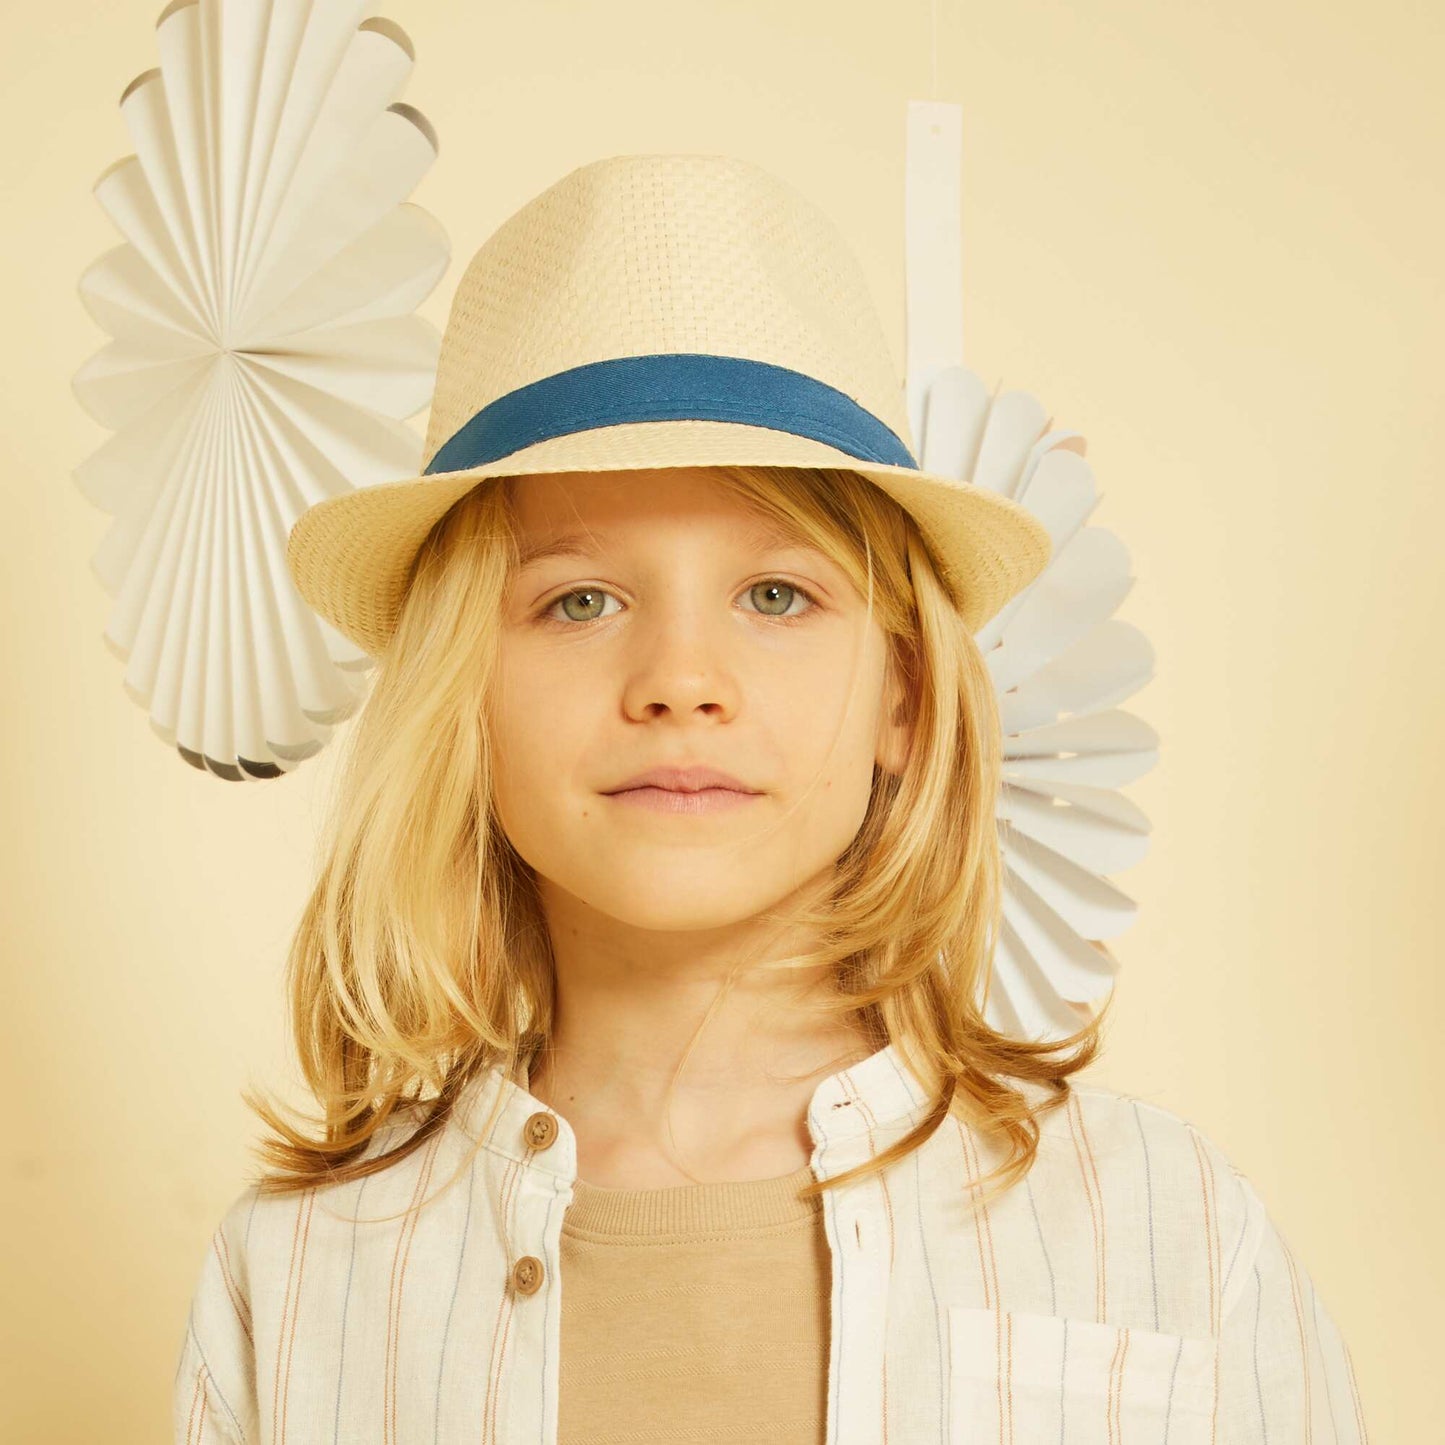 Chapeau panama avec bandeau contrast Beige/bleu